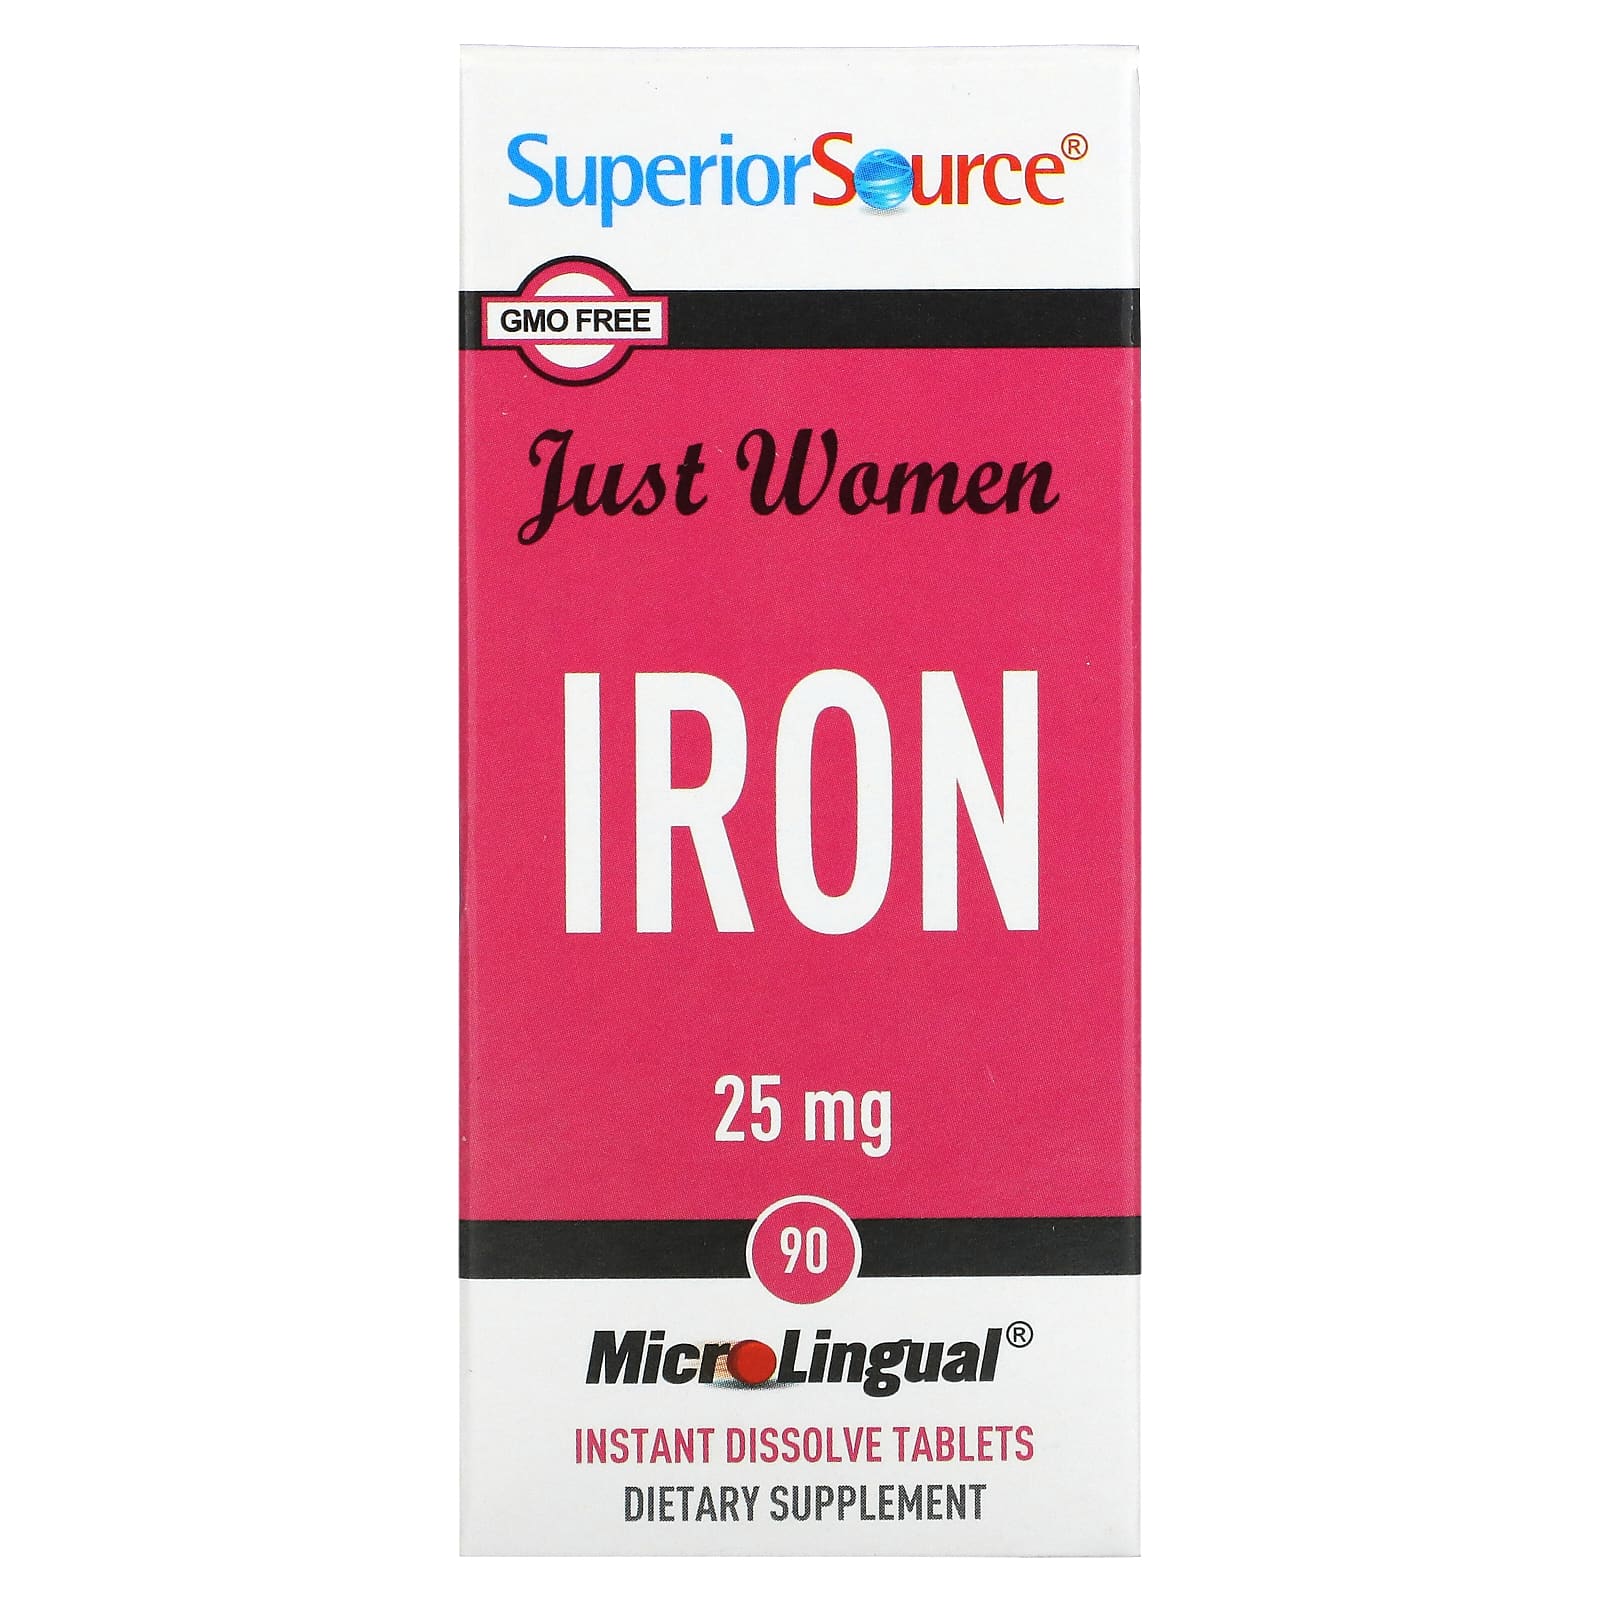 Superior Source Just Women железо 25 мг 90 микролингвальных быстрорастворимых таблеток